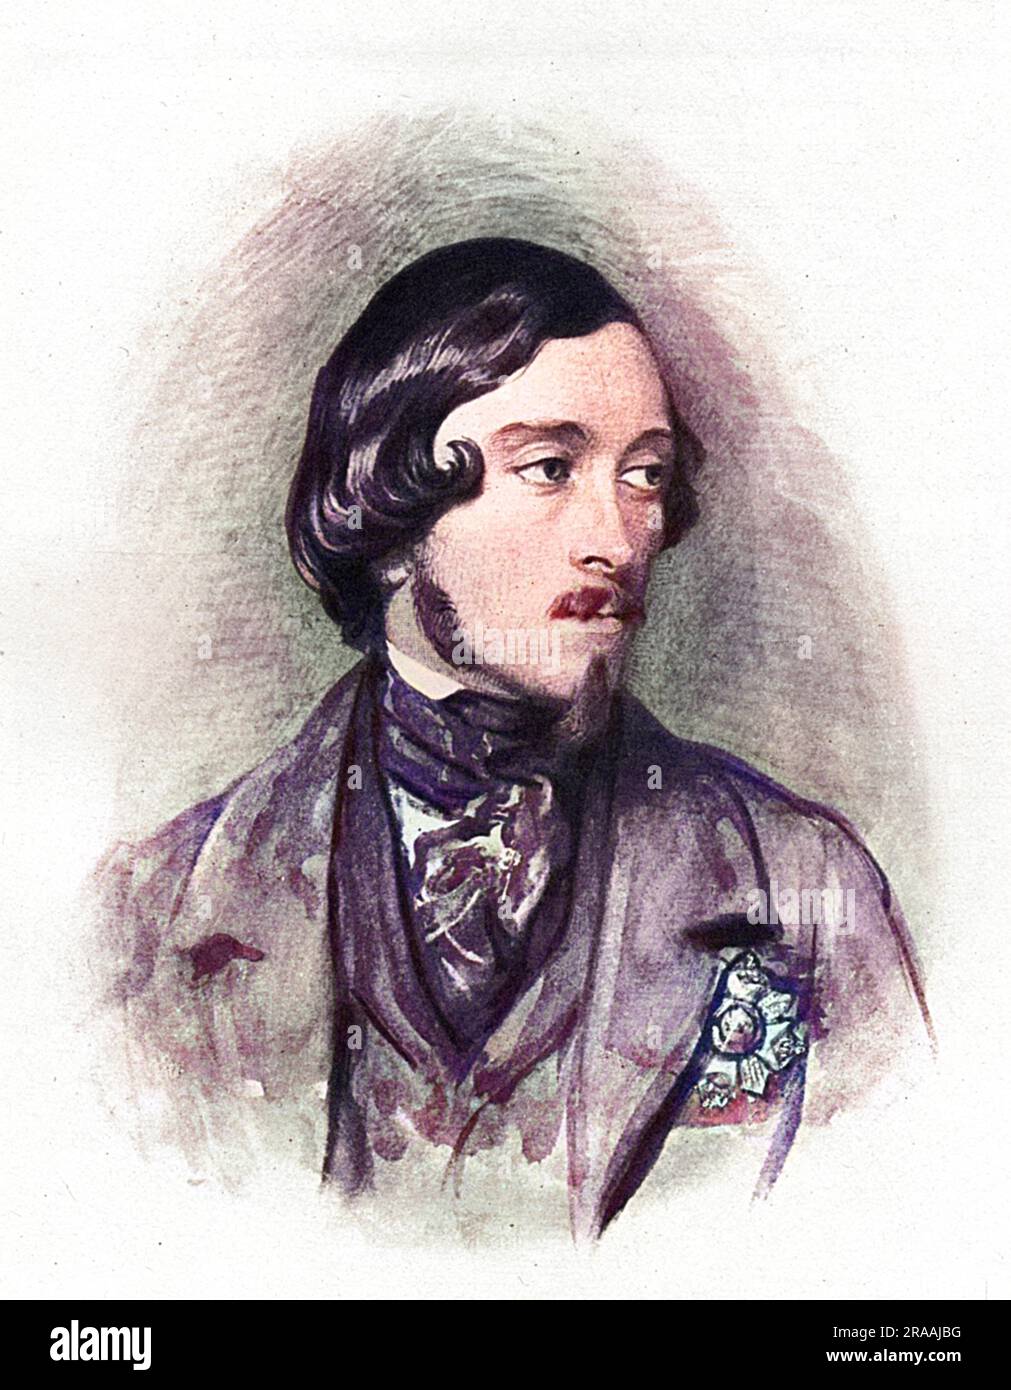 Ernest II, Duc de Saxe-Cobourg-Gotha (1818-1893), frère de Prince Albert, le Prince Consort. Date : 1830 Banque D'Images